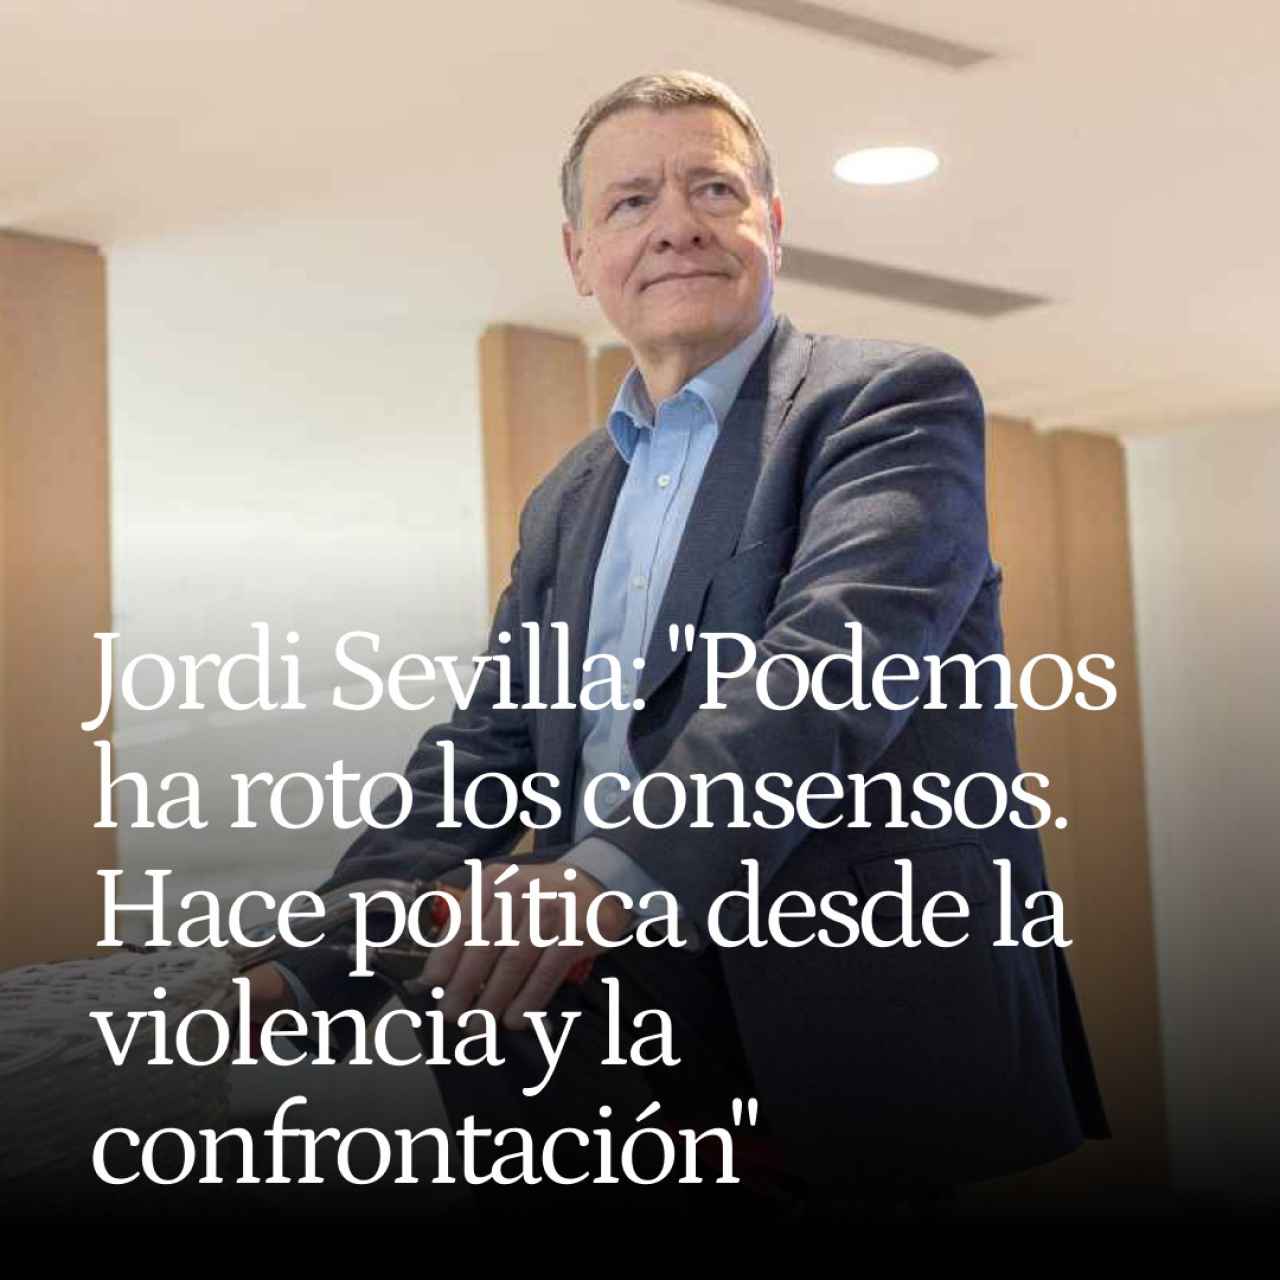 Jordi Sevilla: "Podemos ha roto los consensos. Hace política desde la violencia y la confrontación"